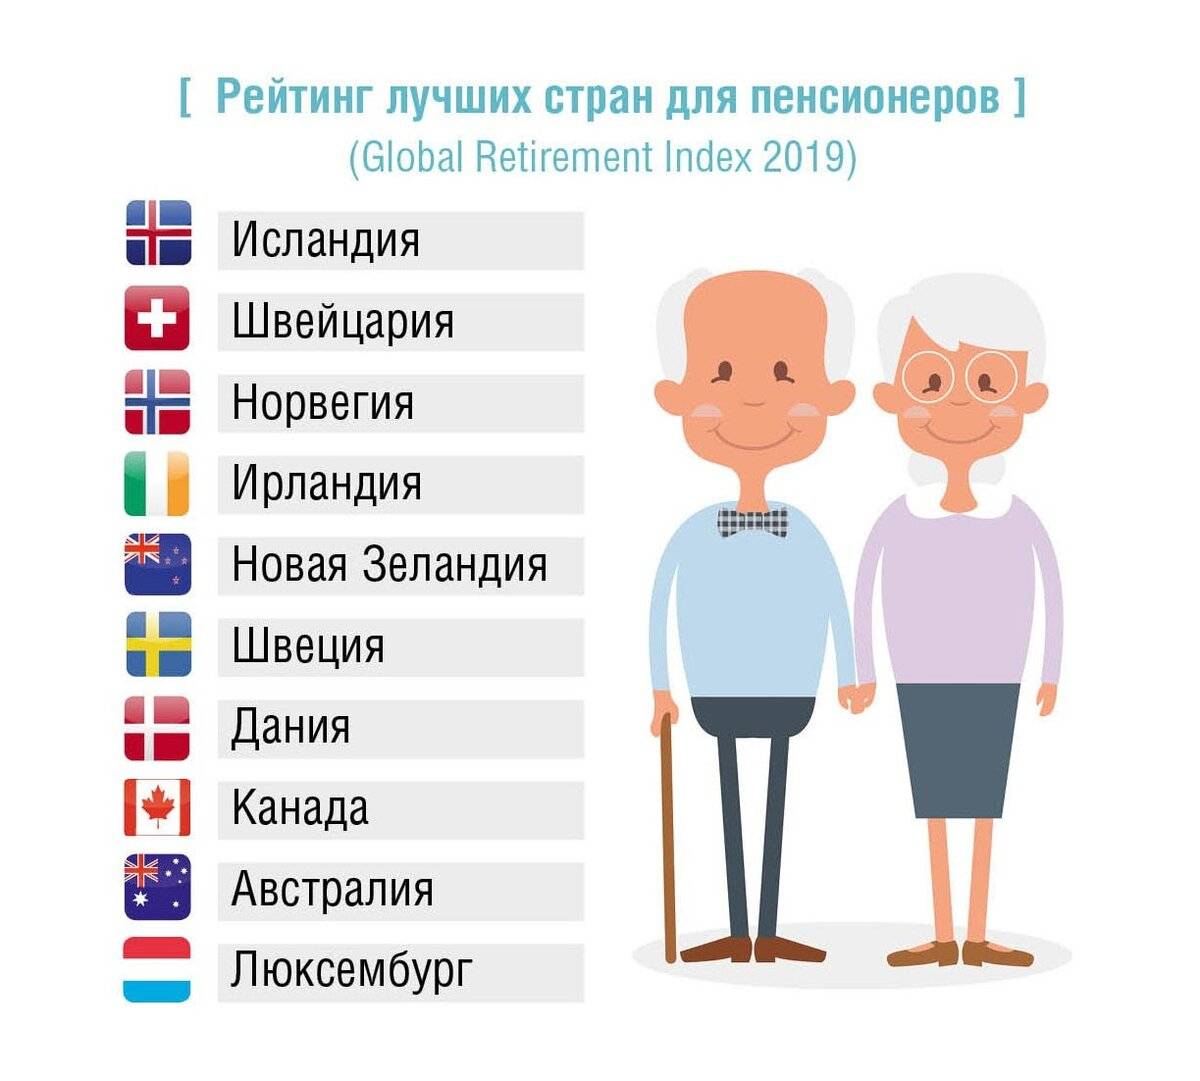 Недвижимость в Испании для пенсионеров из России: как выбрать и стоит ли покупать